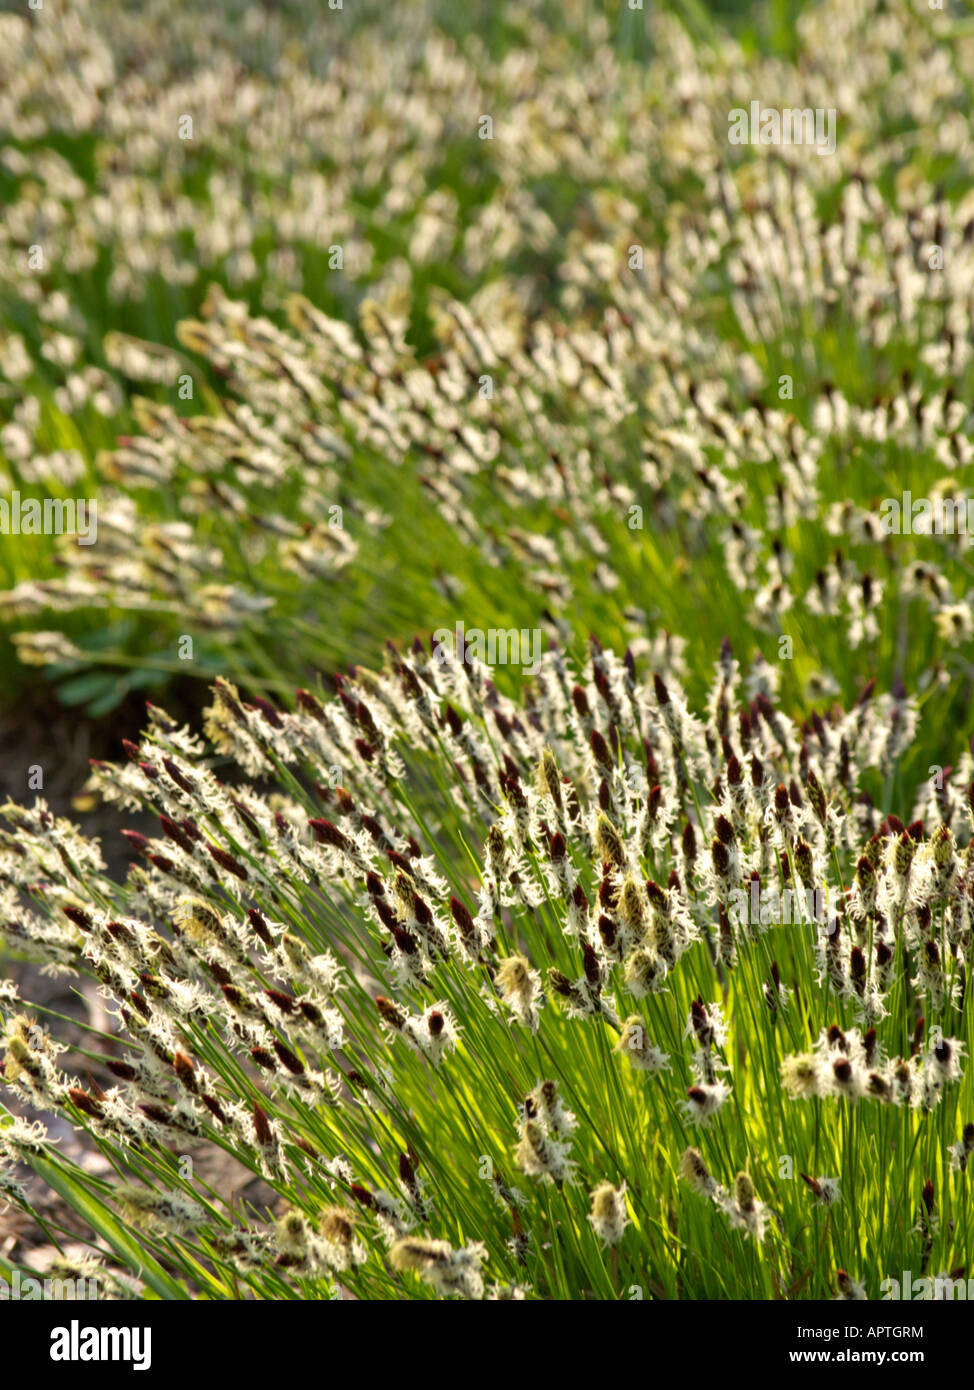 Mountain sedge (Carex montana) Stock Photo